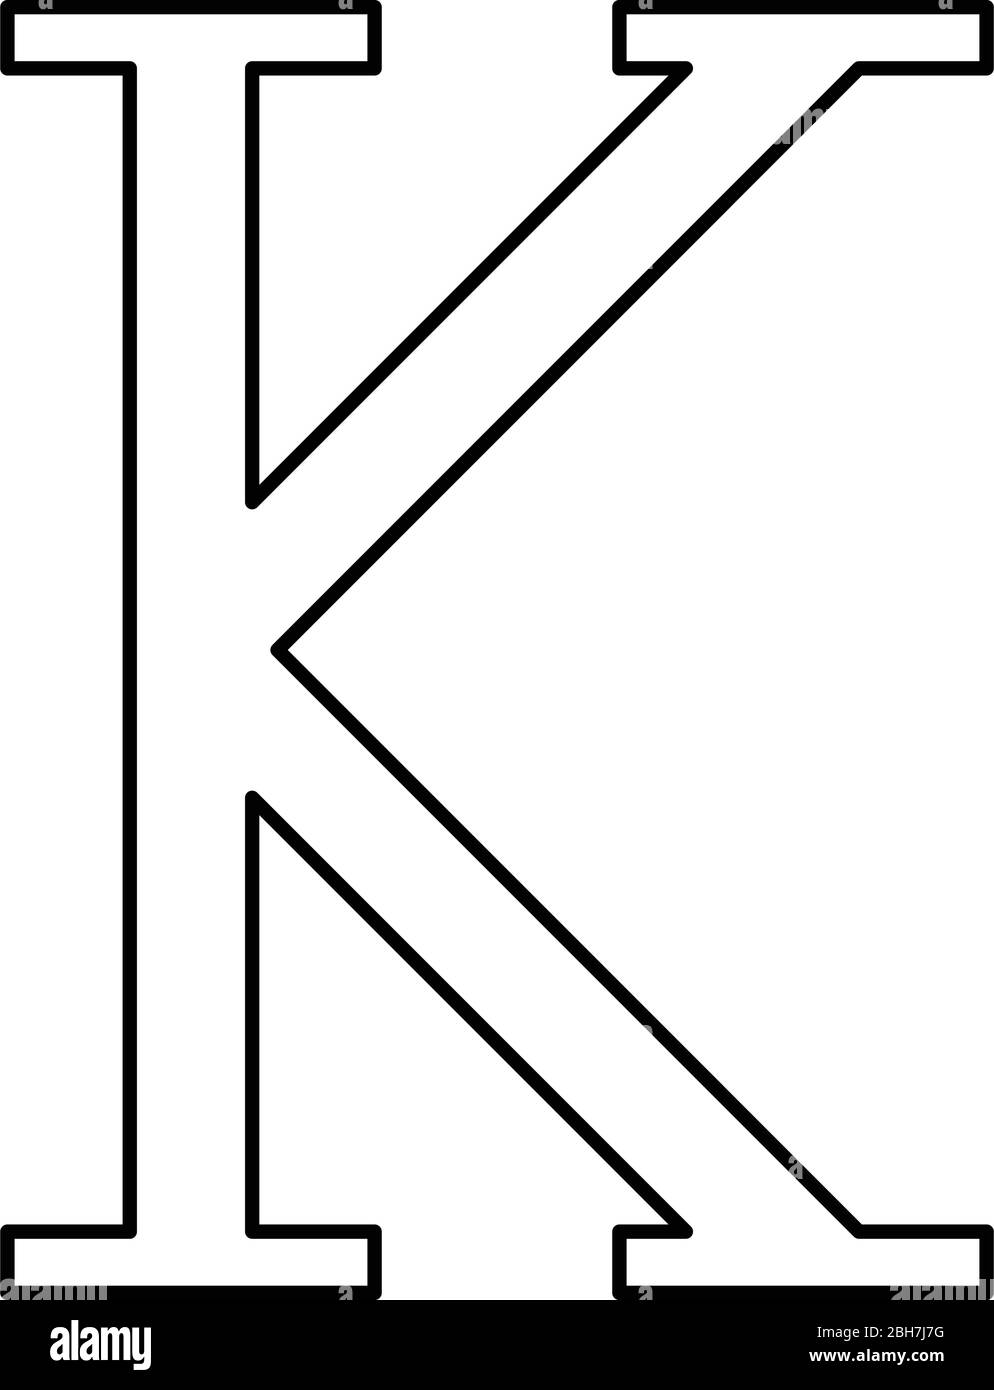 Kappa griechisch Symbol Großbuchstaben Großbuchstaben Schrift Symbol Umriss  schwarz Farbe Vektor Illustration flach Stil einfaches Bild  Stock-Vektorgrafik - Alamy